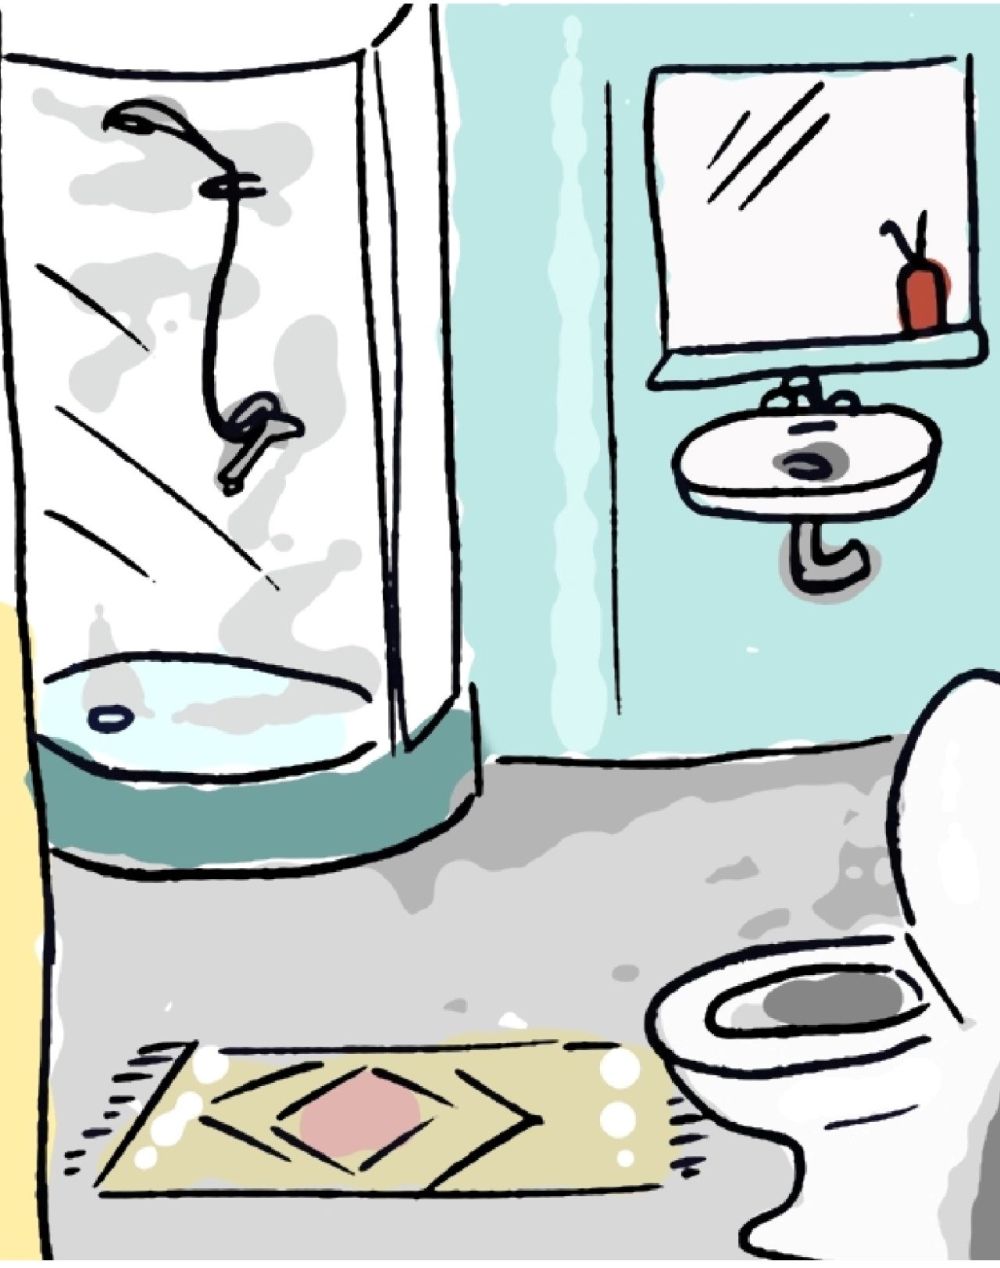 Ilustracijom je prikazana kupaonica.